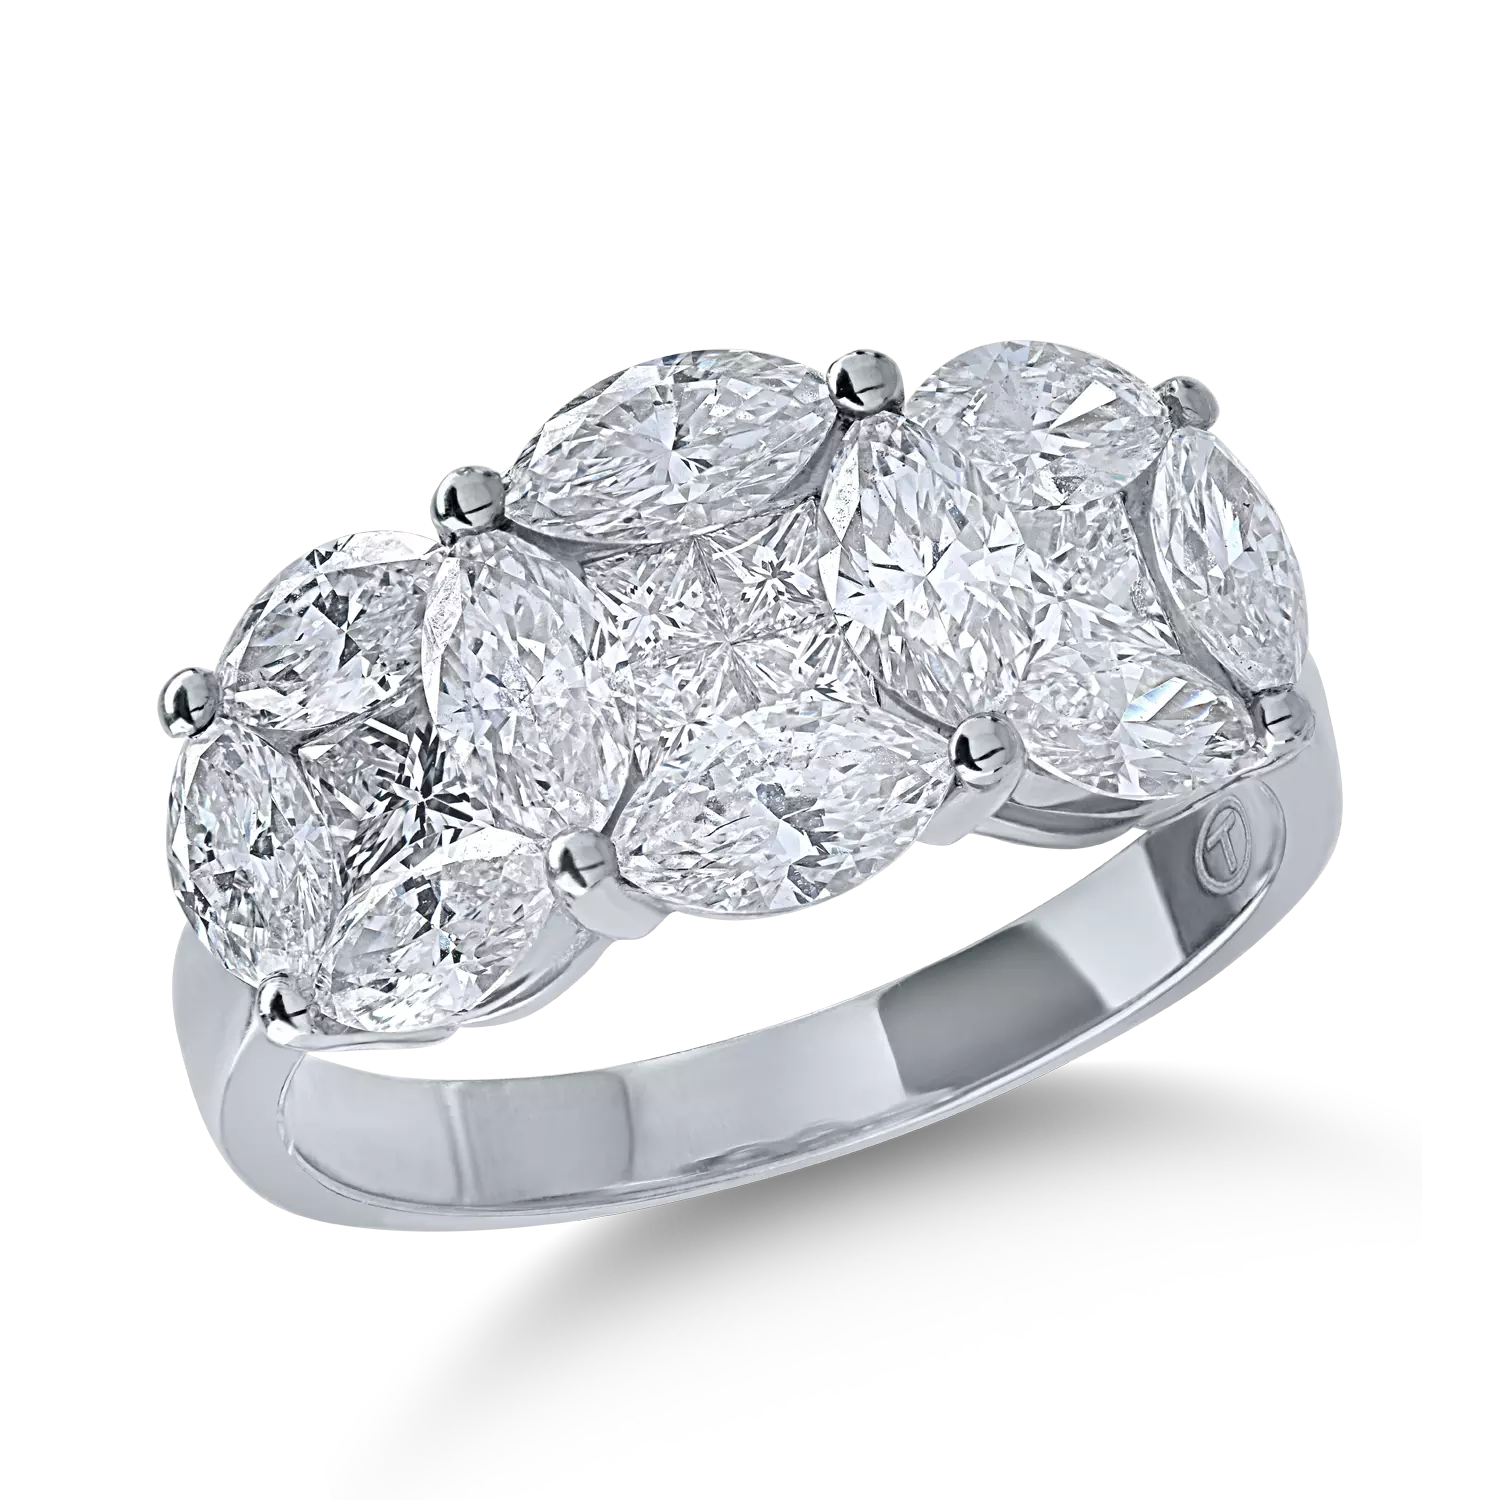 Fehérarany gyűrű 2.13ct gyémántokkal